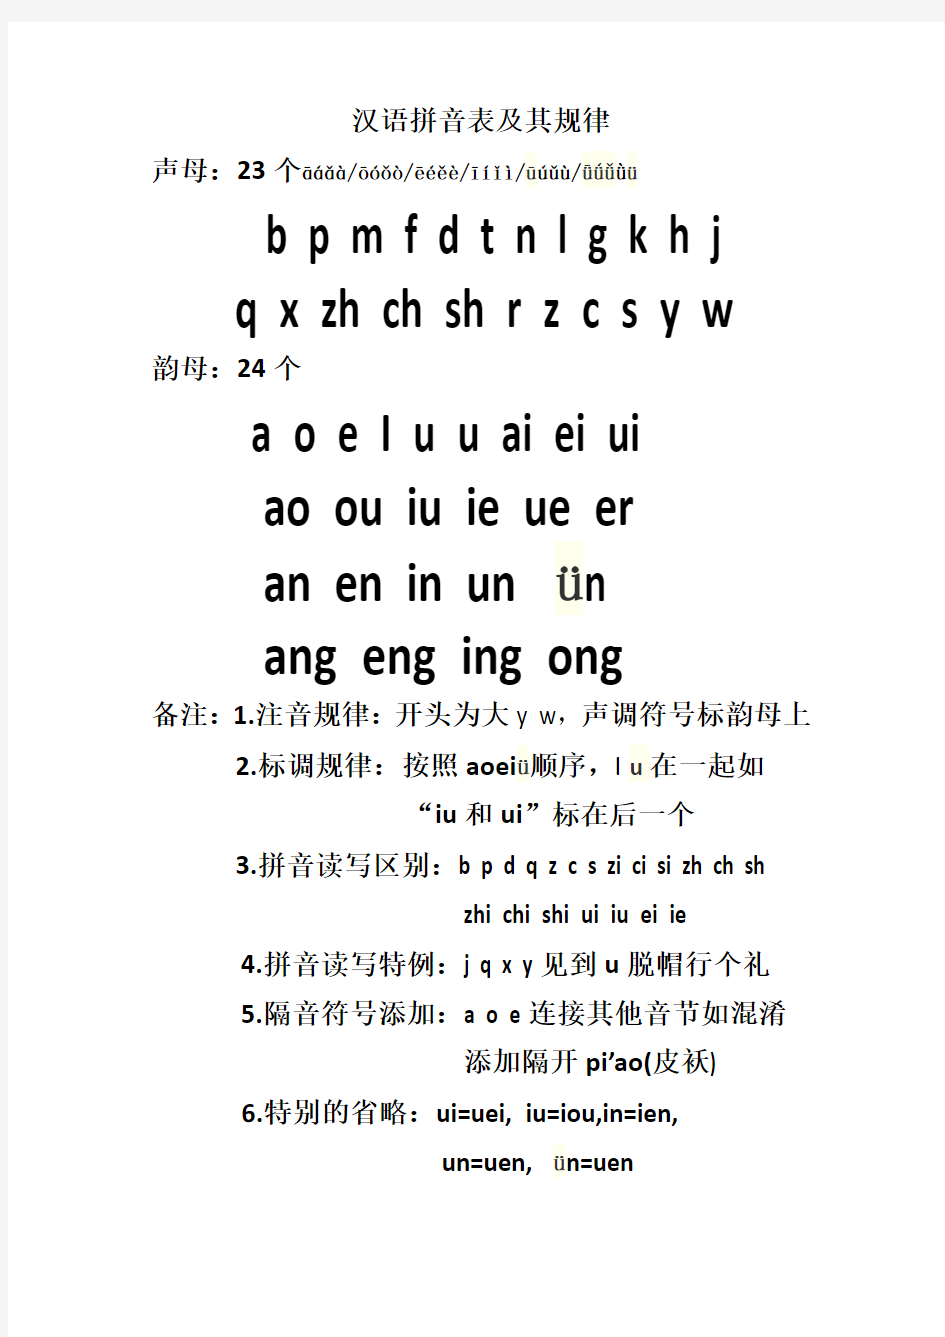 汉语拼音基础知识